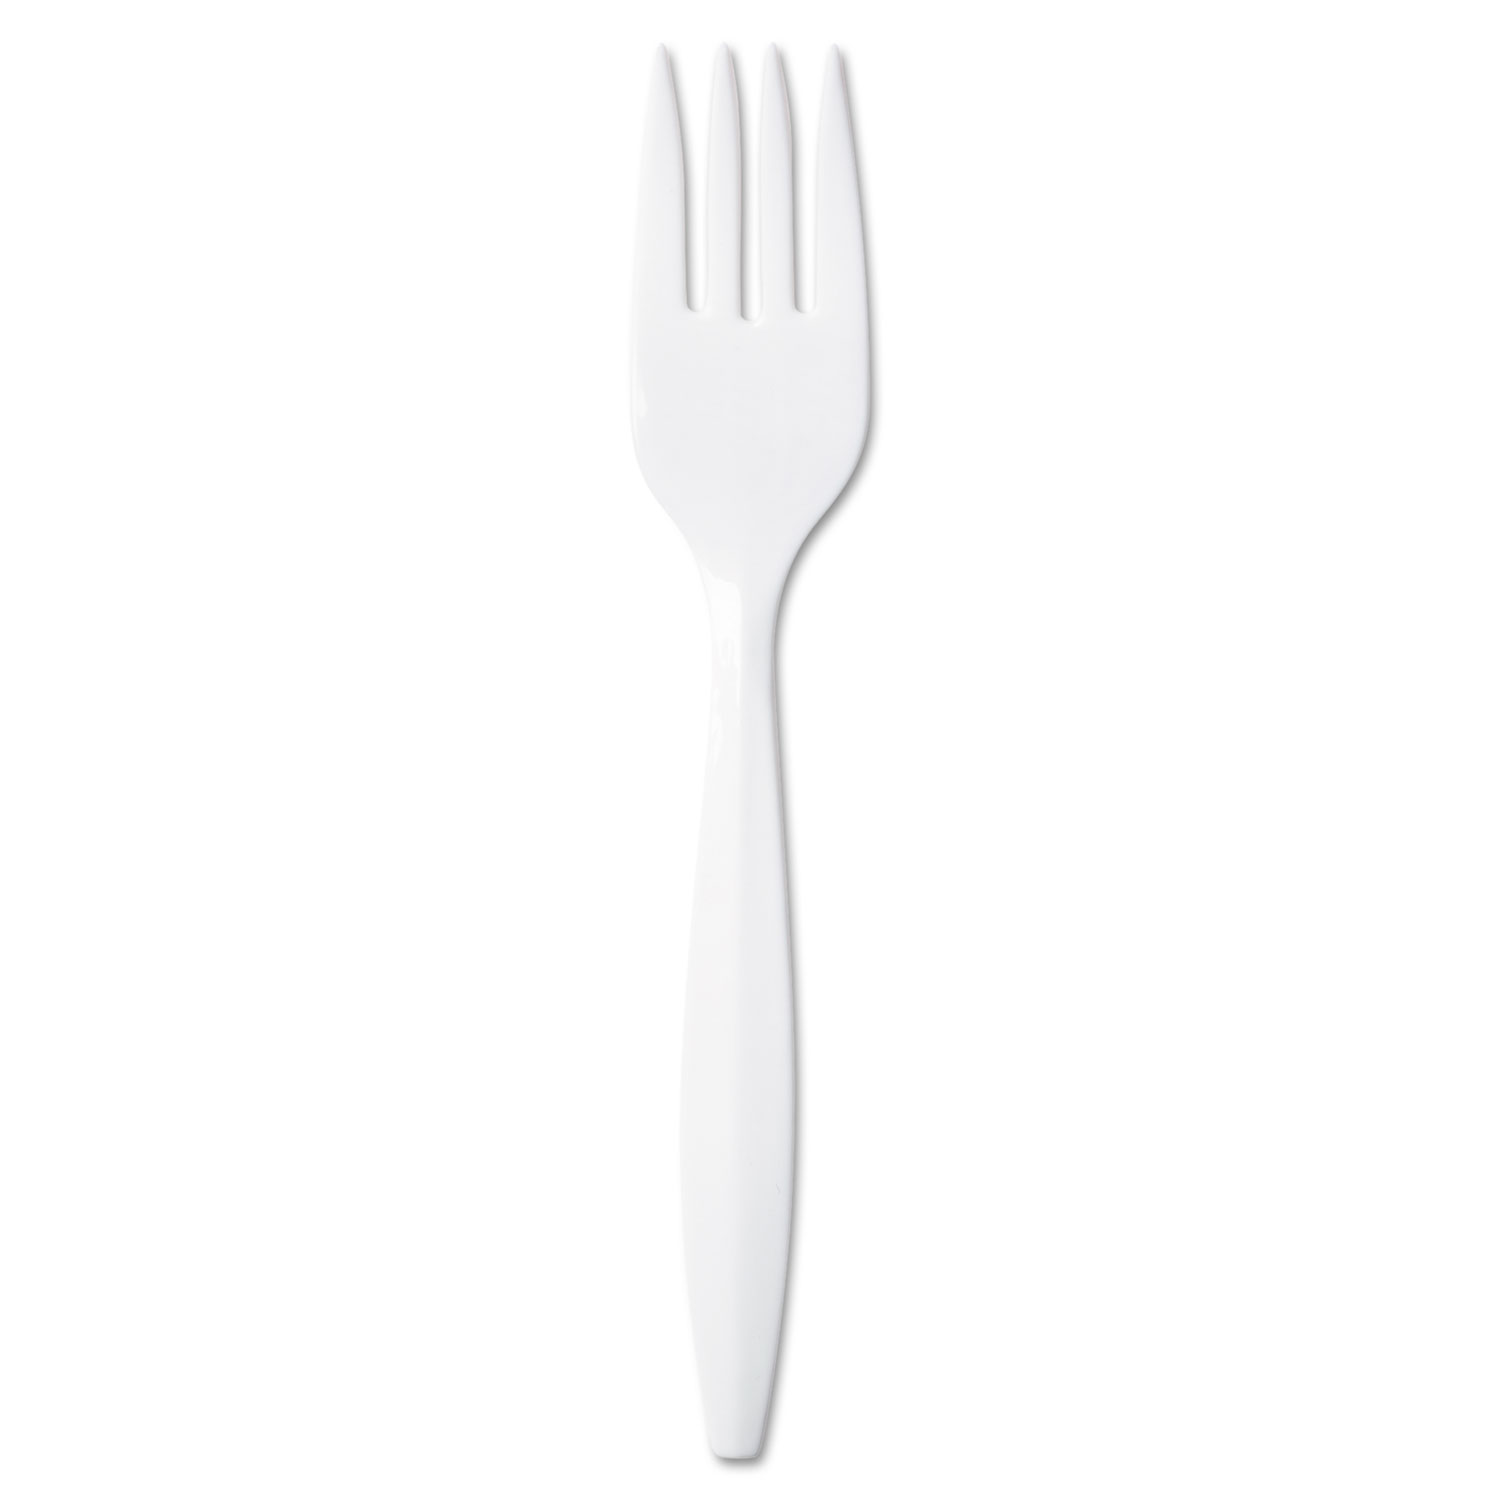  Dixie PFM21 Plastic Cutlery, Mediumweight Forks, White, 1,000/Carton (DXEPFM21) 